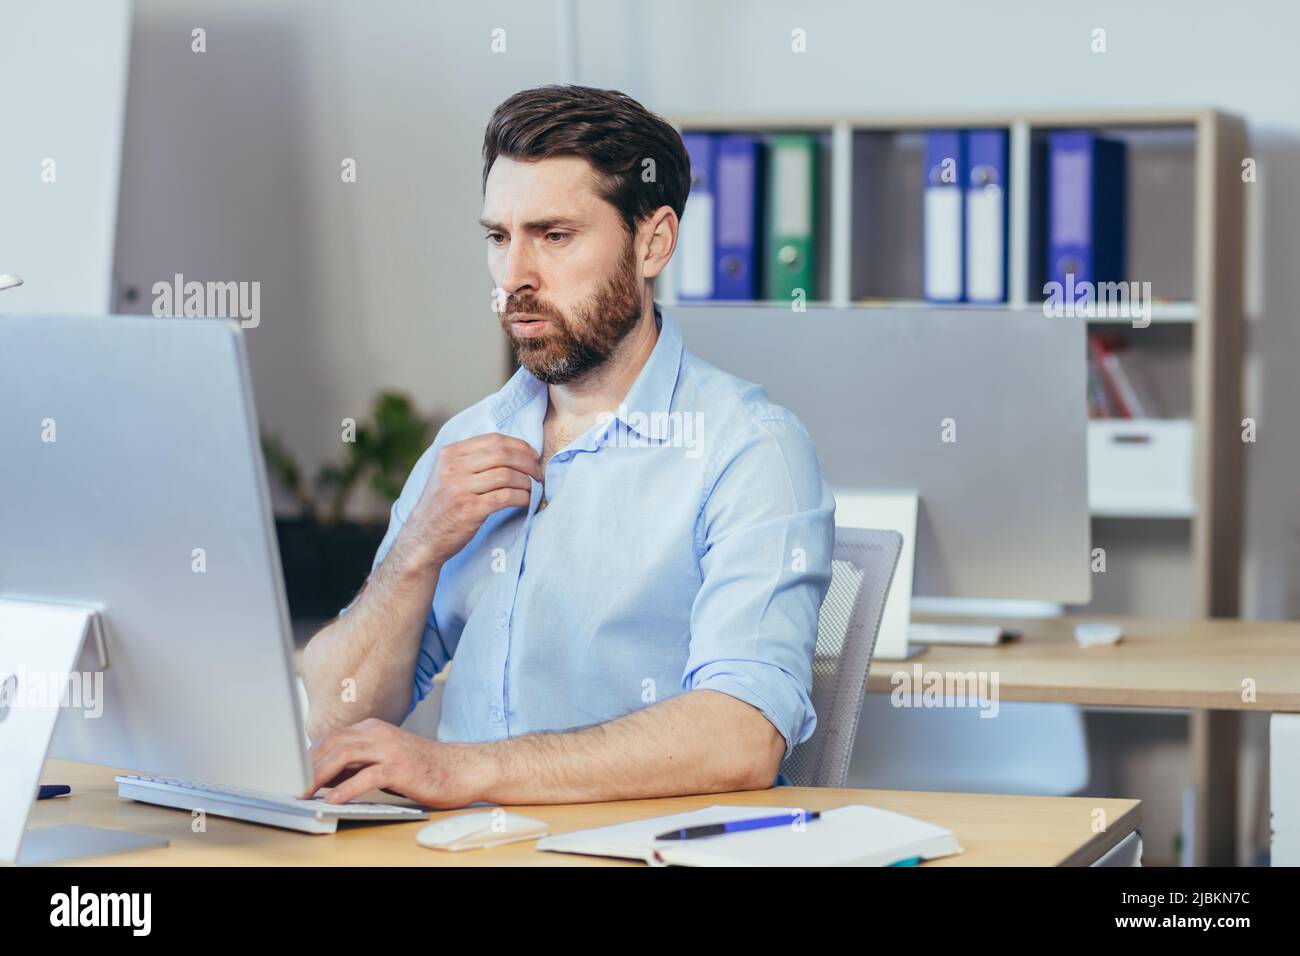 Caldo in ufficio, un uomo d'affari in una camicia che lavora in un luminoso ufficio moderno, agitando le braccia cercando di rinfrescarsi Foto Stock